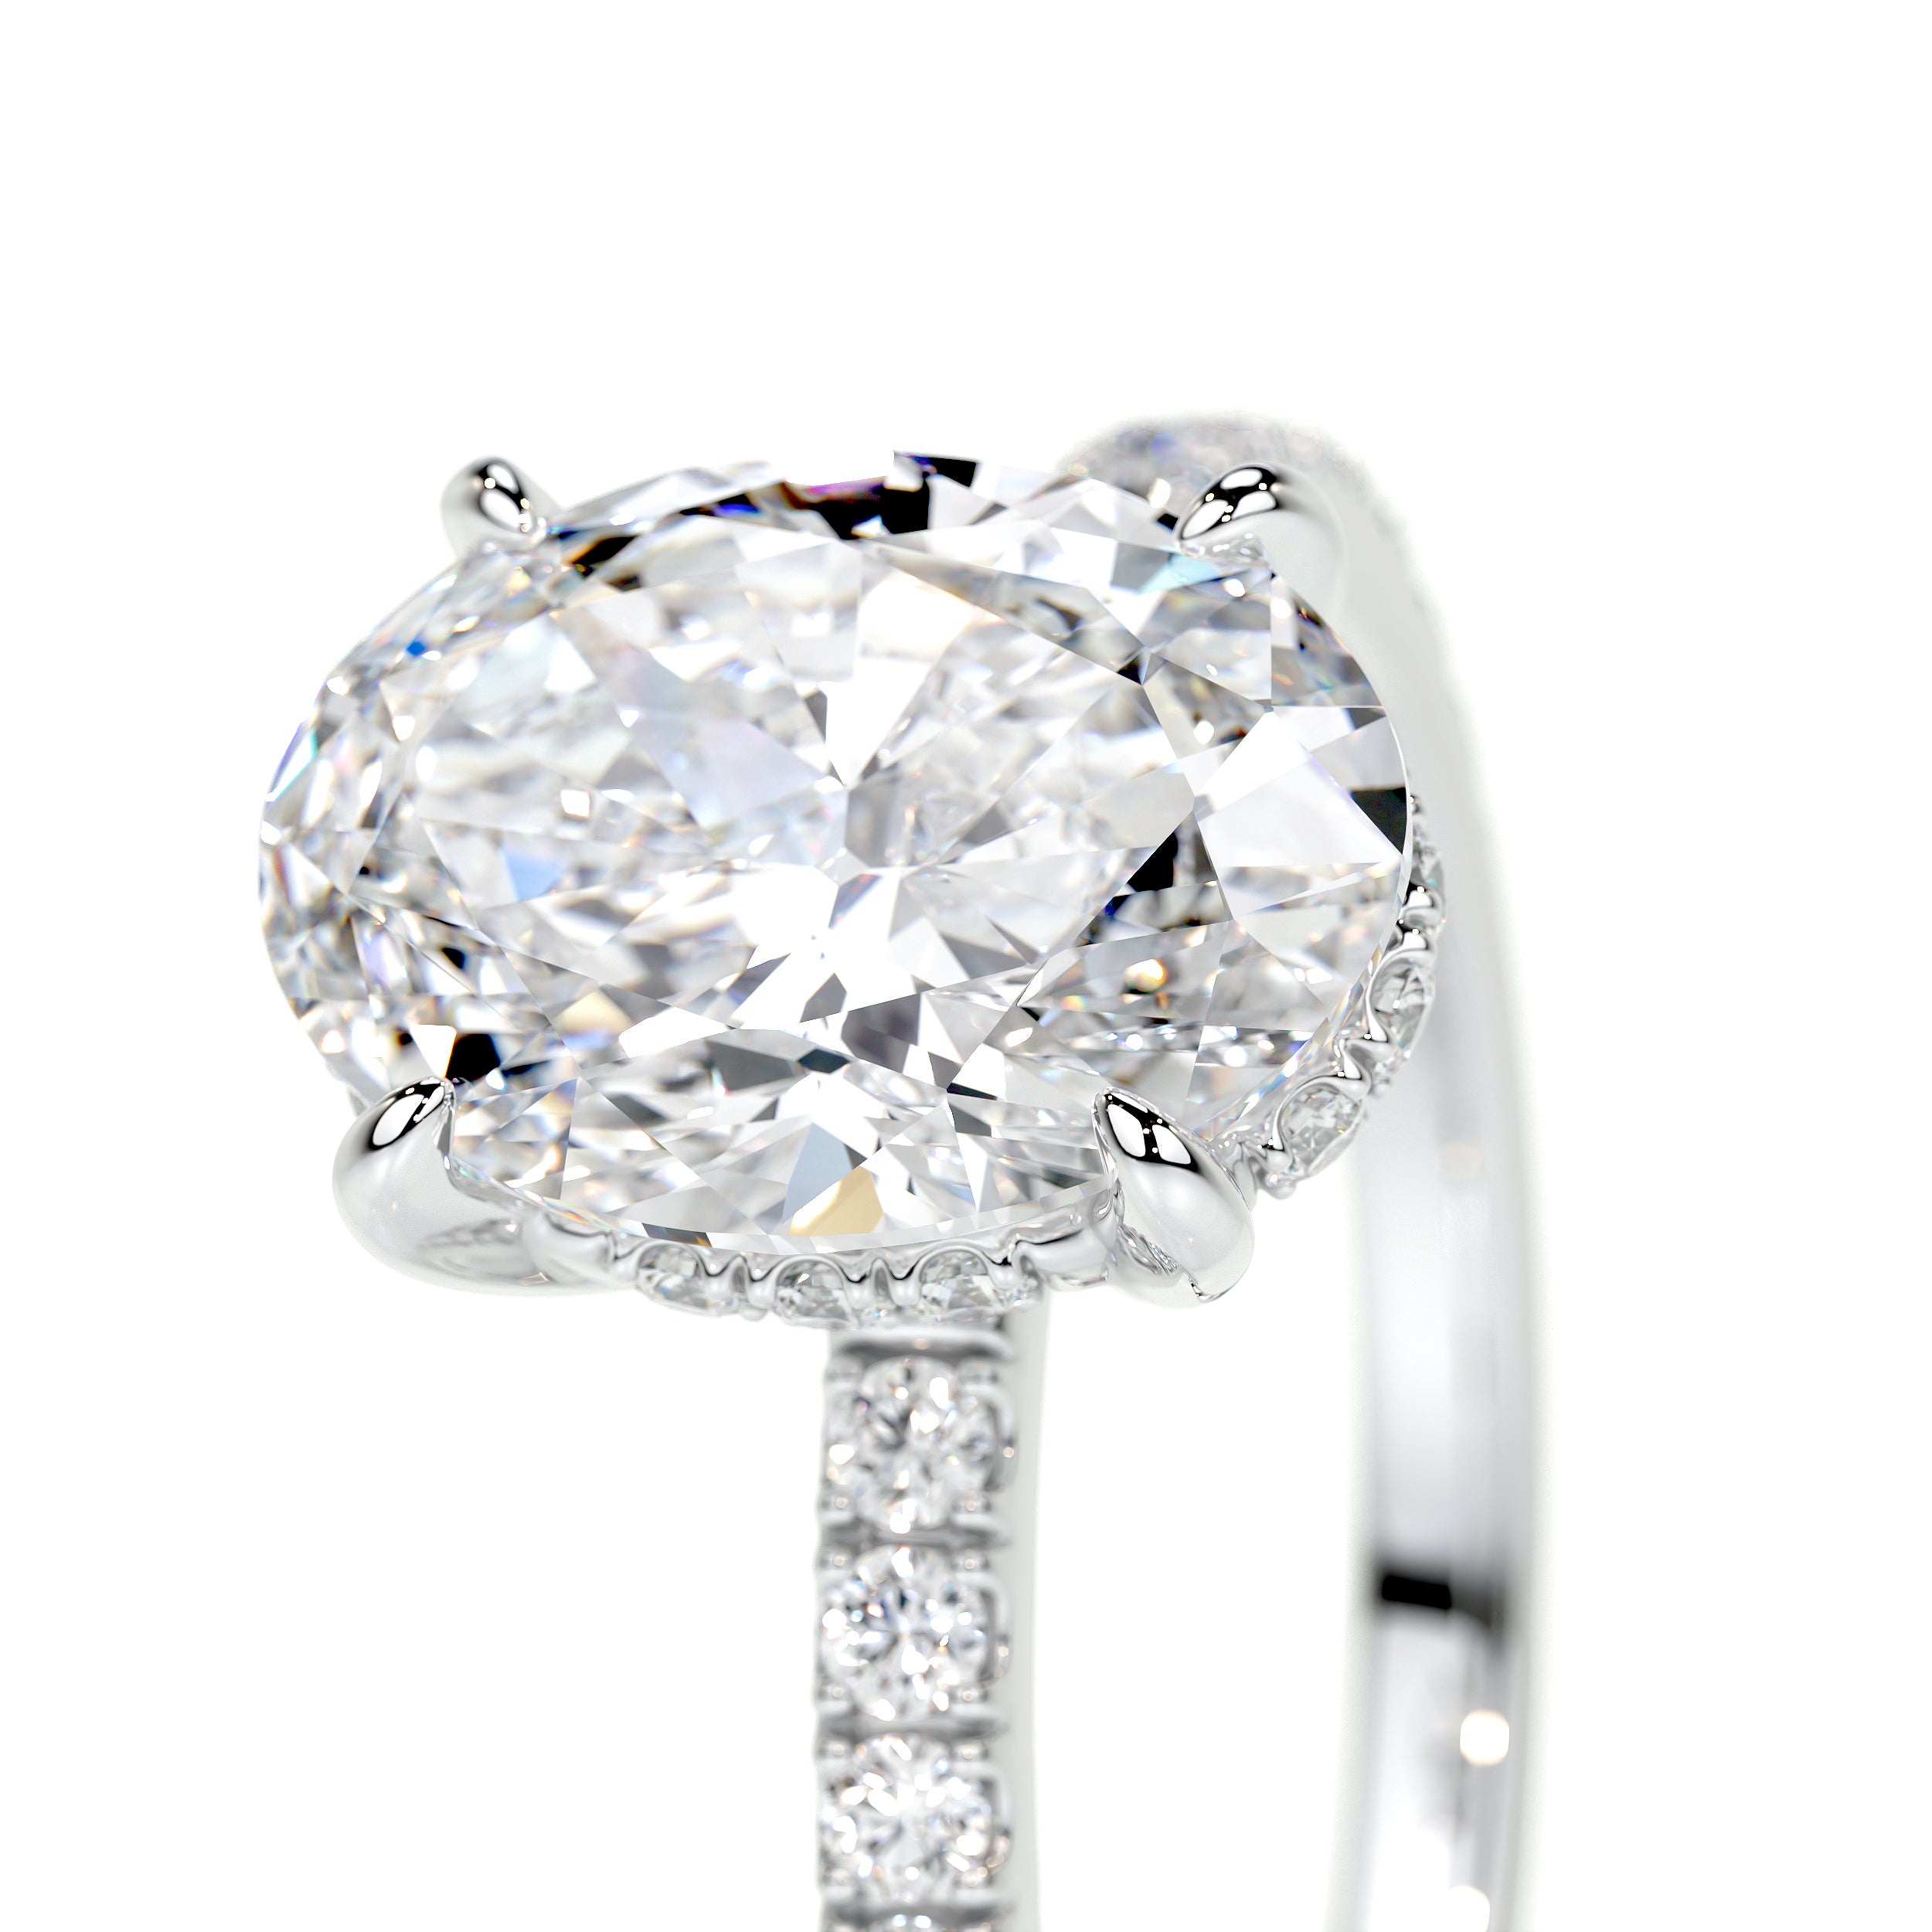 Lucy Lab Grown Diamond Ring   (2 Carat) -18K White Gold